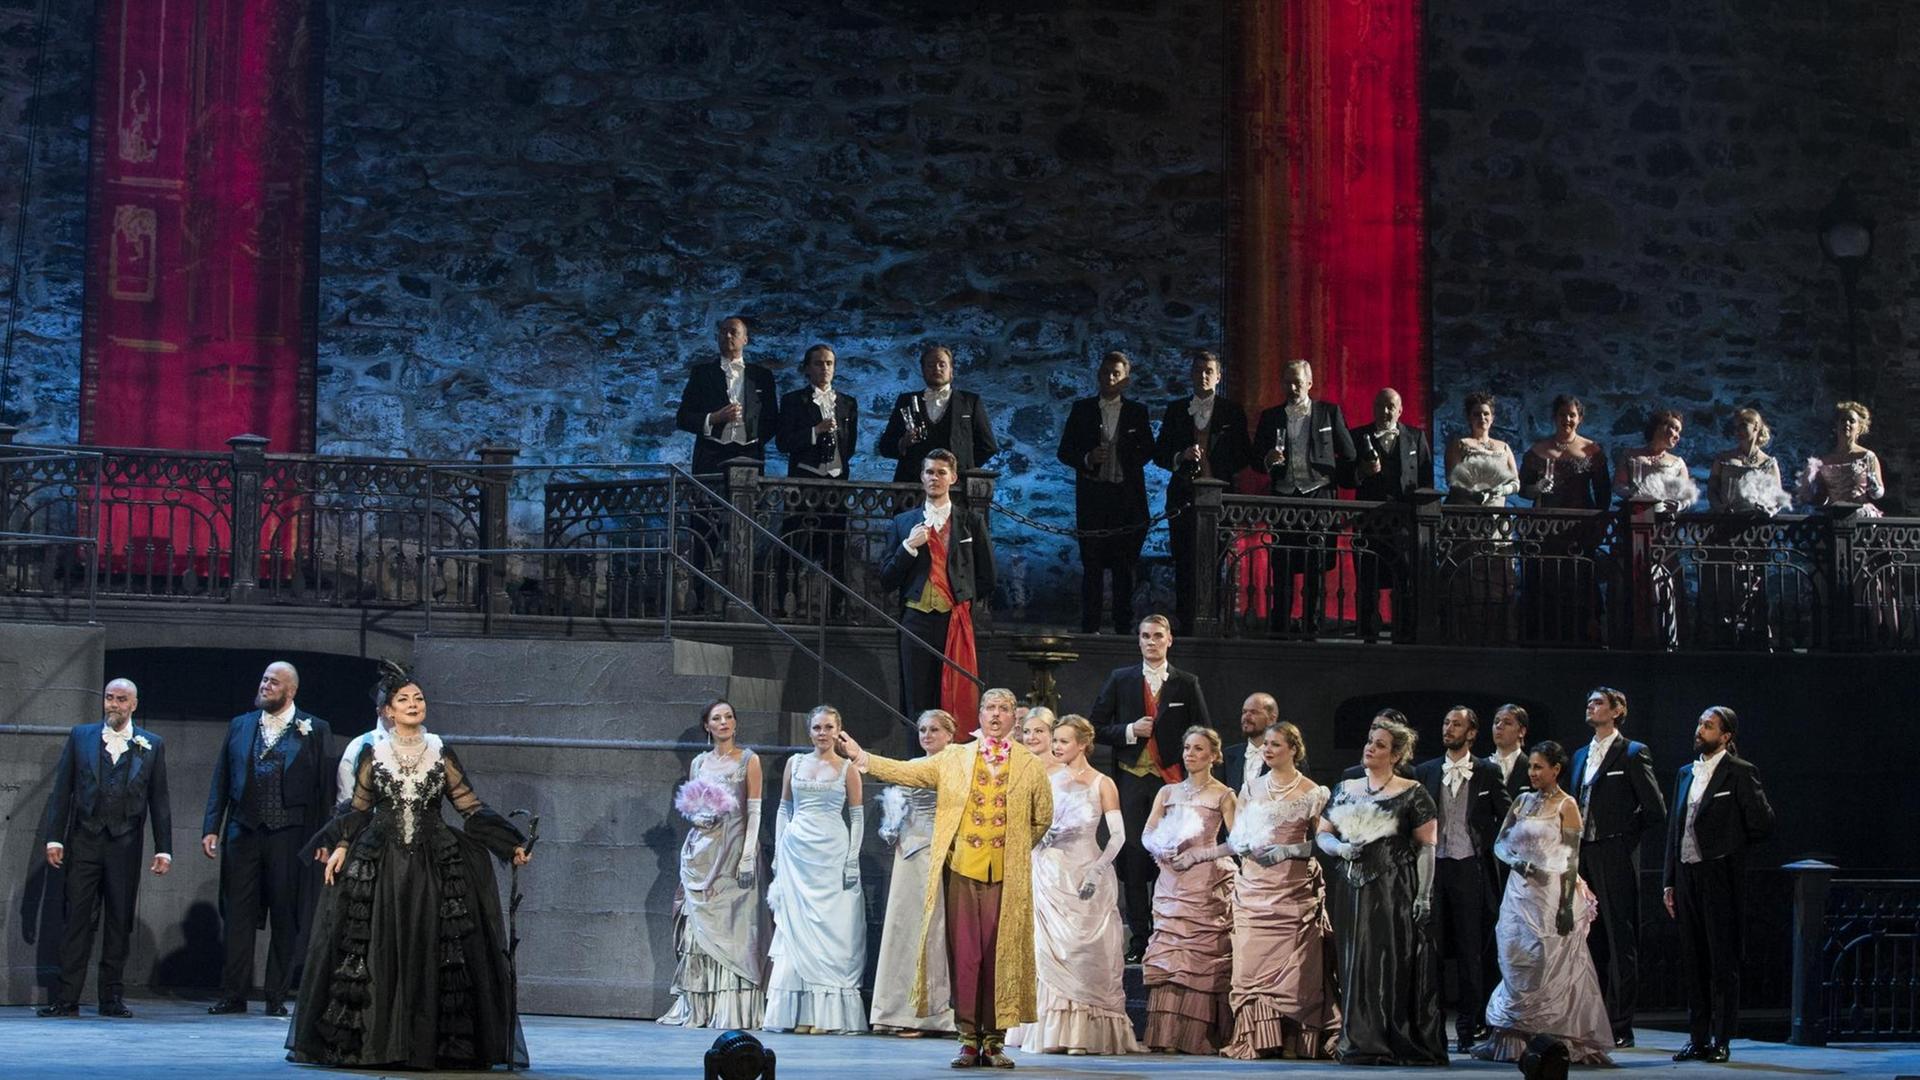 Neuproduktion von Peter Tschaikowskys Musikdrama "Pique Dame" bei den Savonlinna Opernfestspielen.